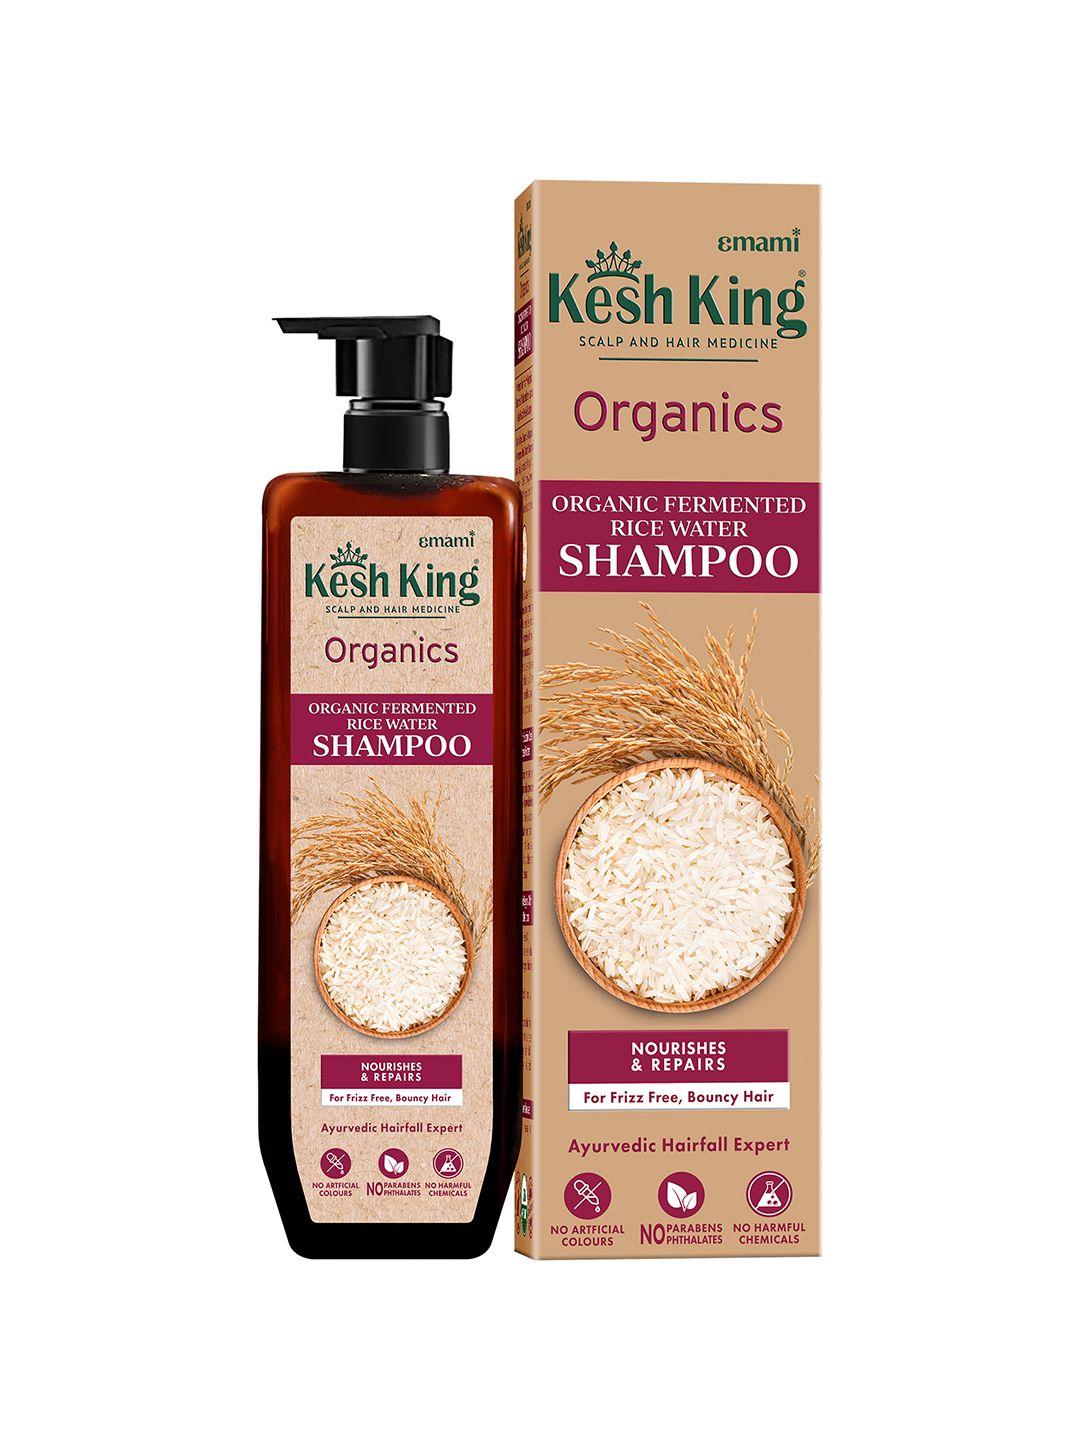 kesh king organics fermented rice water shampoo - nourishes & repairs - 300ml